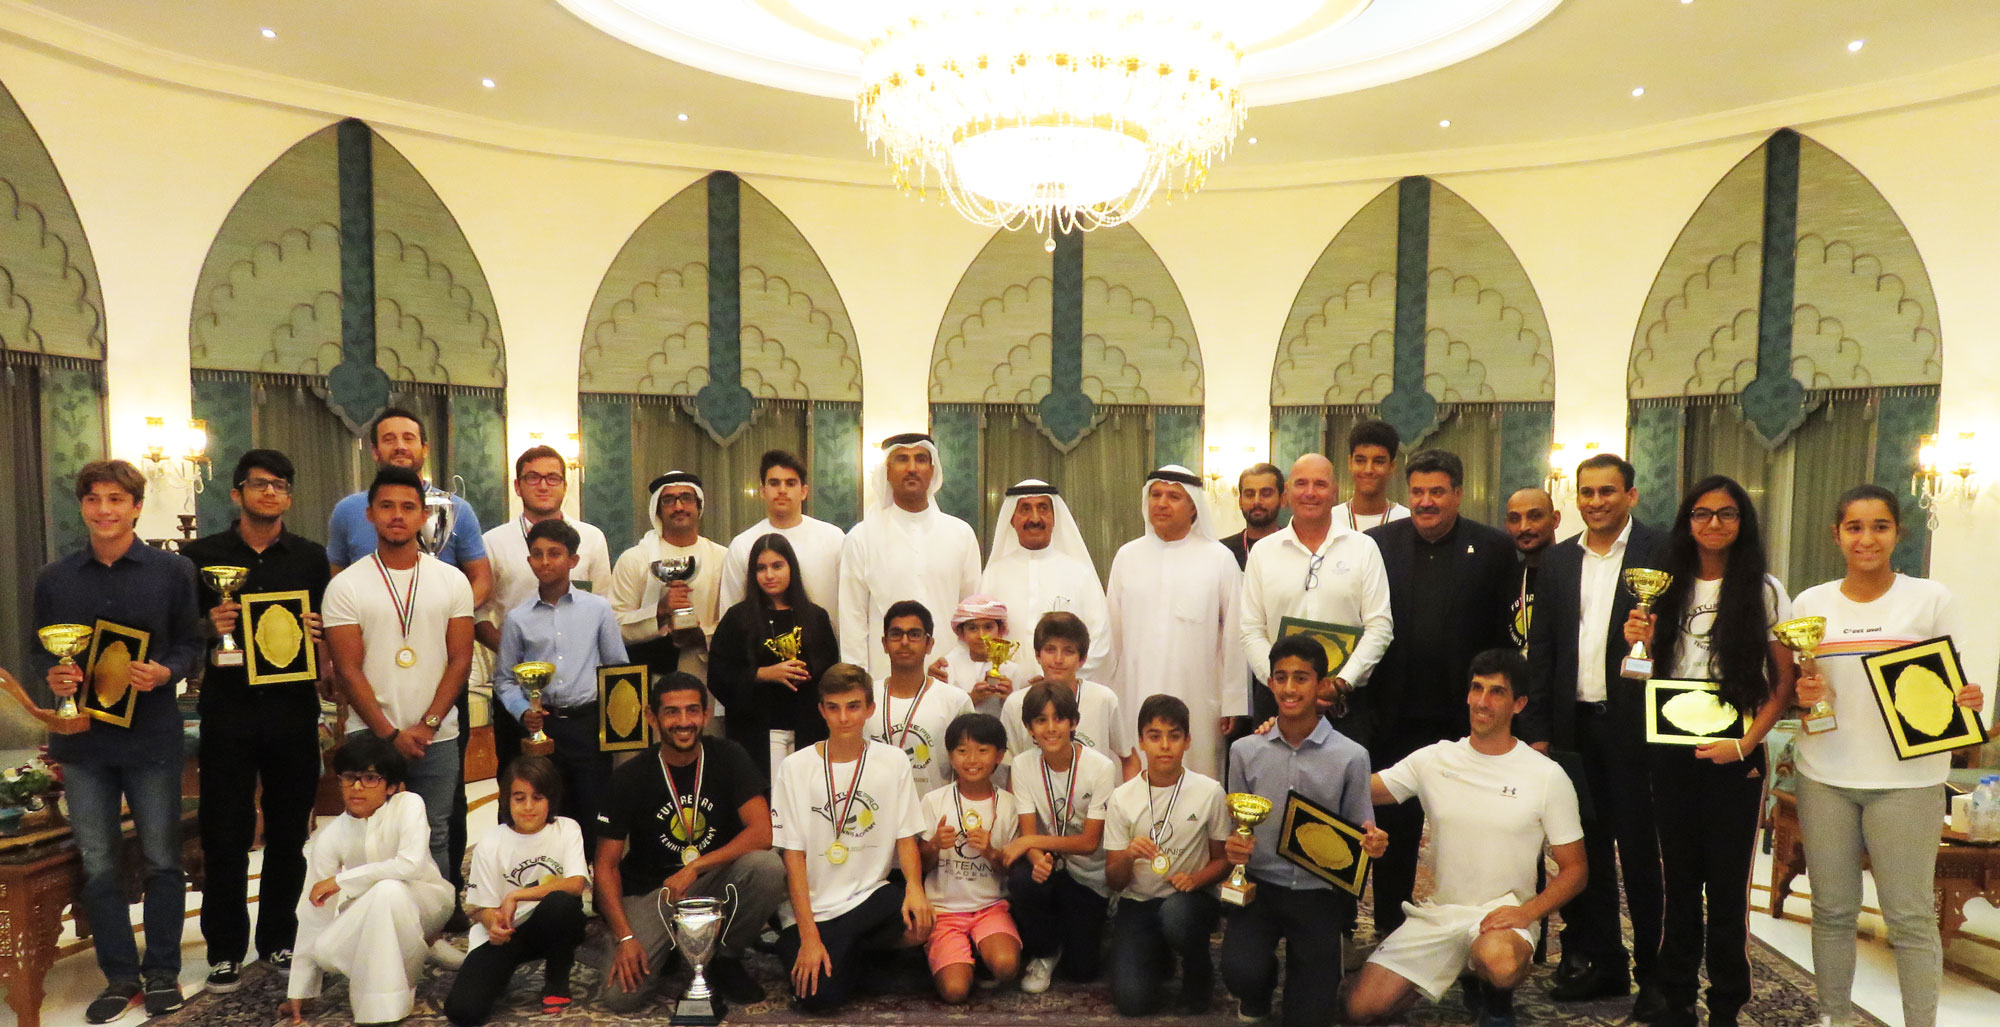 الشيخ حشر بن مكتوم بن جمعة آل مكتوم، رئيس اتحاد الإمارات للتنس يكرم الفائزين وأصحاب المراكز الأولى في التنس